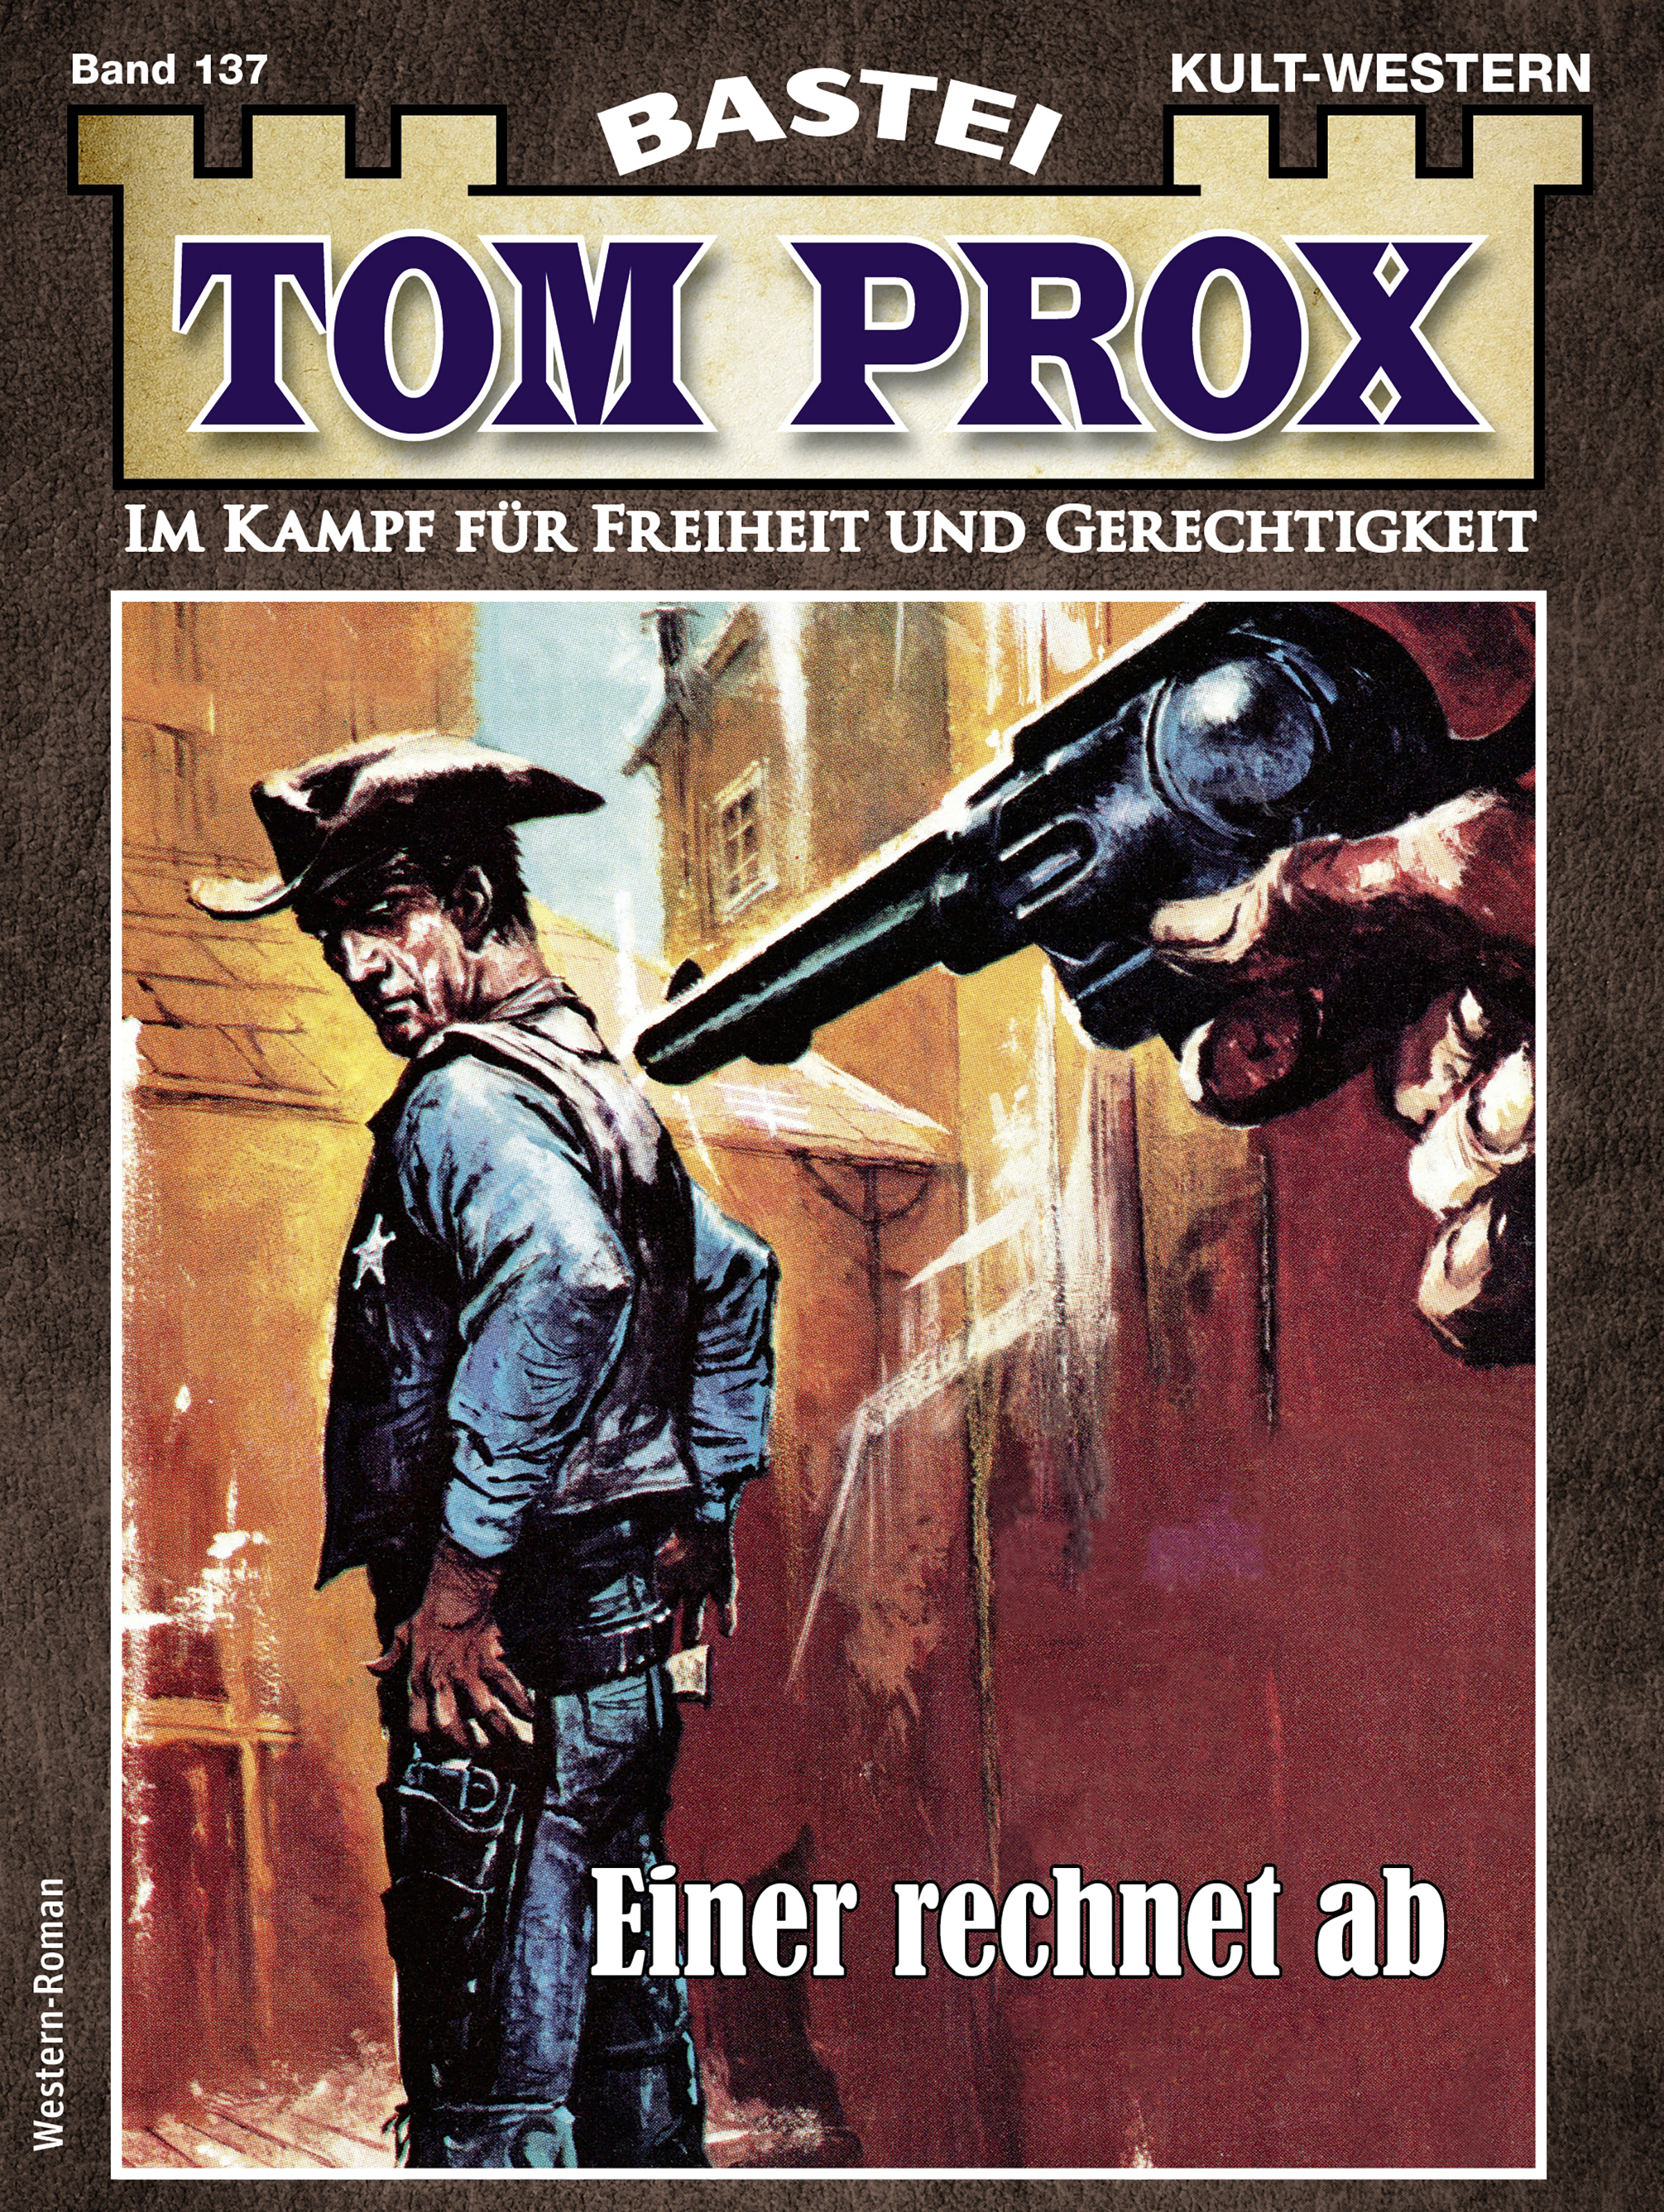 Tom Prox